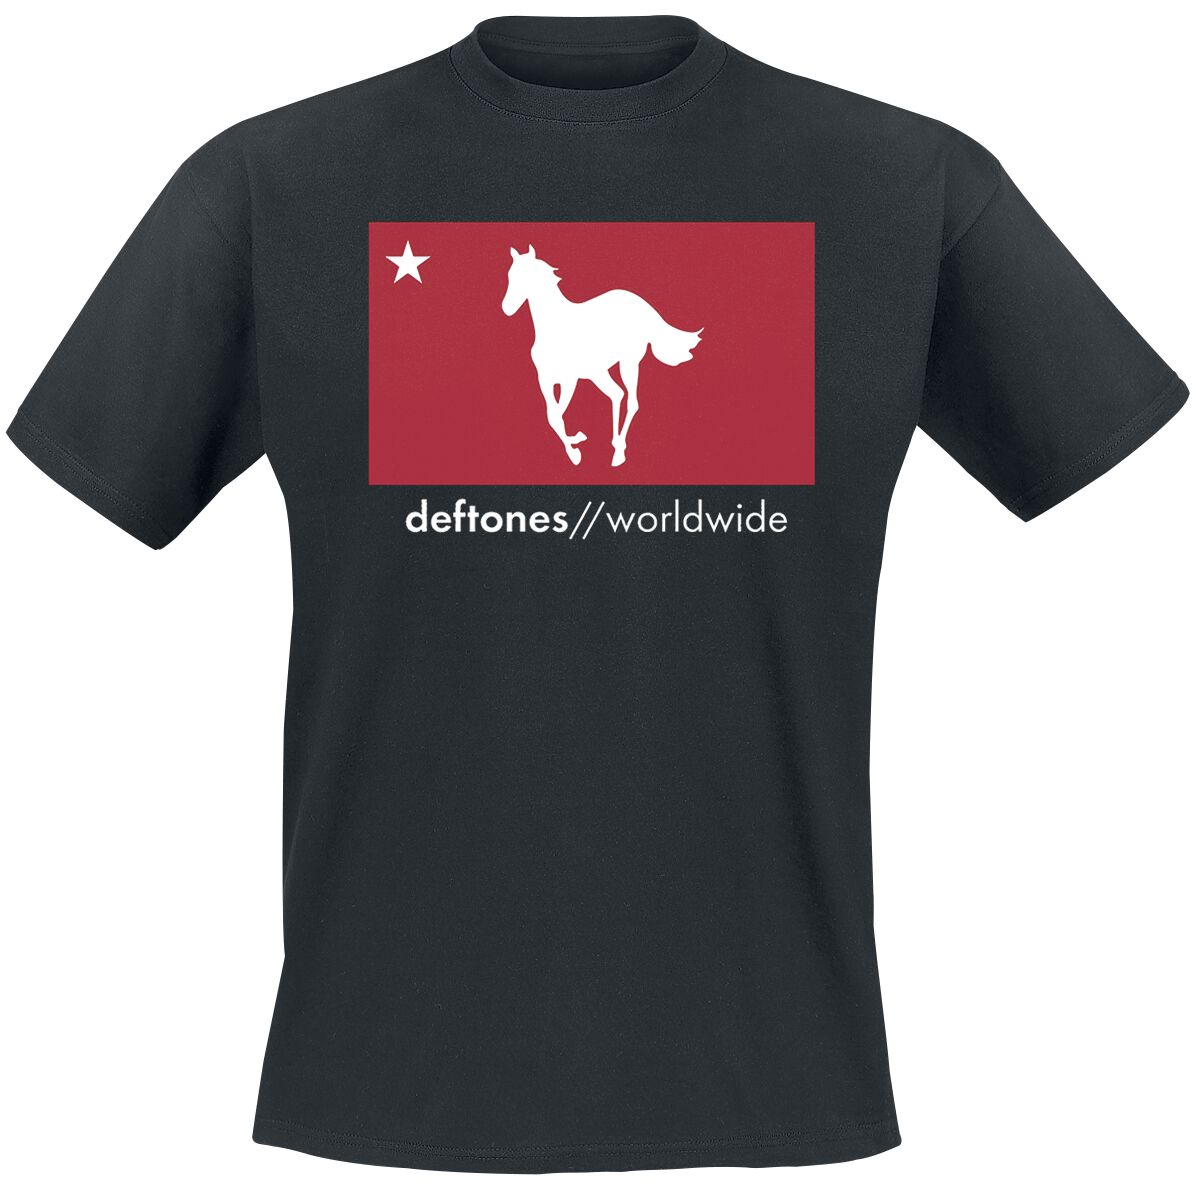 Deftones T-Shirt - Worldwide - M bis L - für Männer - Größe L - schwarz  - Lizenziertes Merchandise!